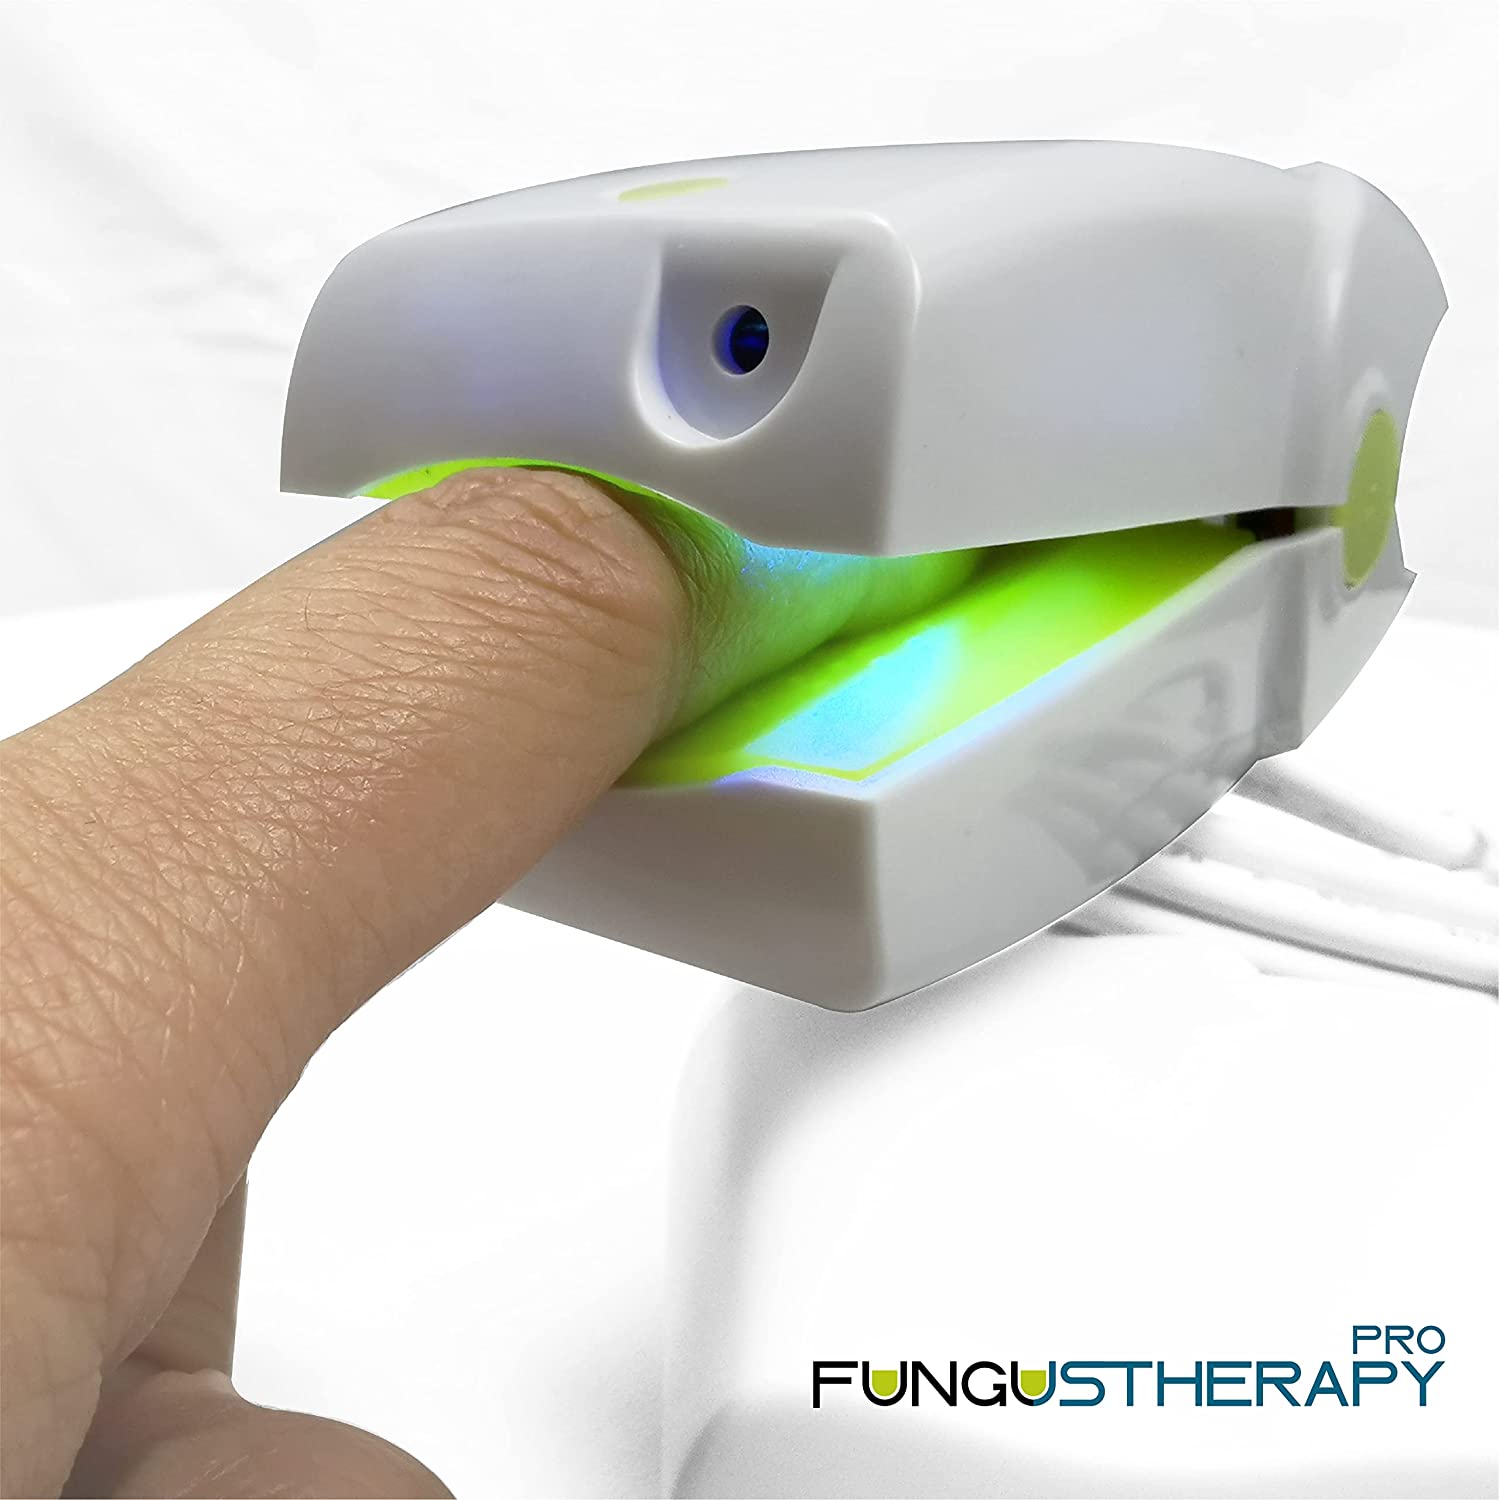 Fungus Therapy Pro laser funziona